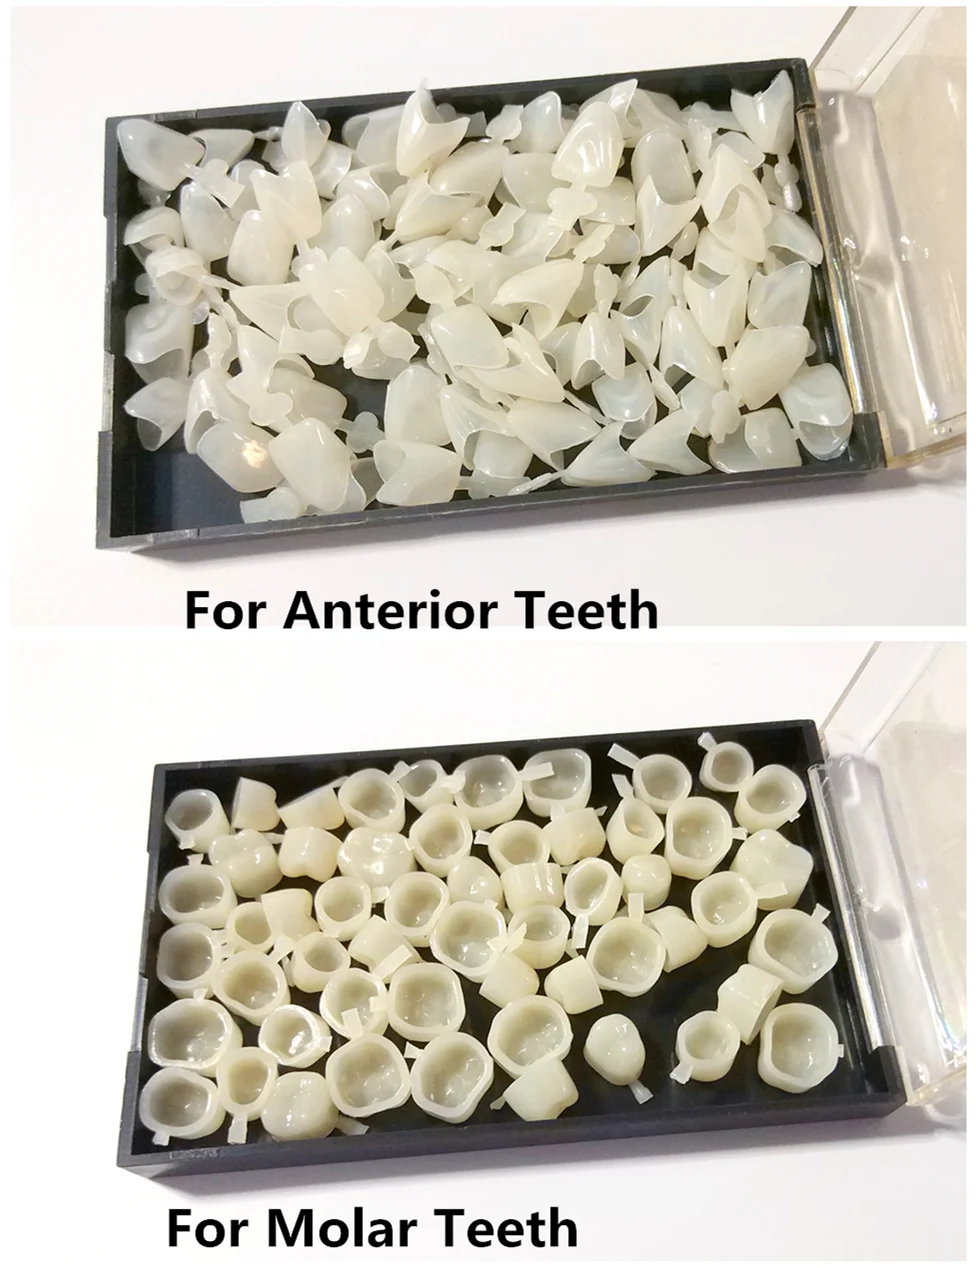 

Стоматологические зубные временные короны, материал для передних и молярных зубных виниров, 2 упаковки